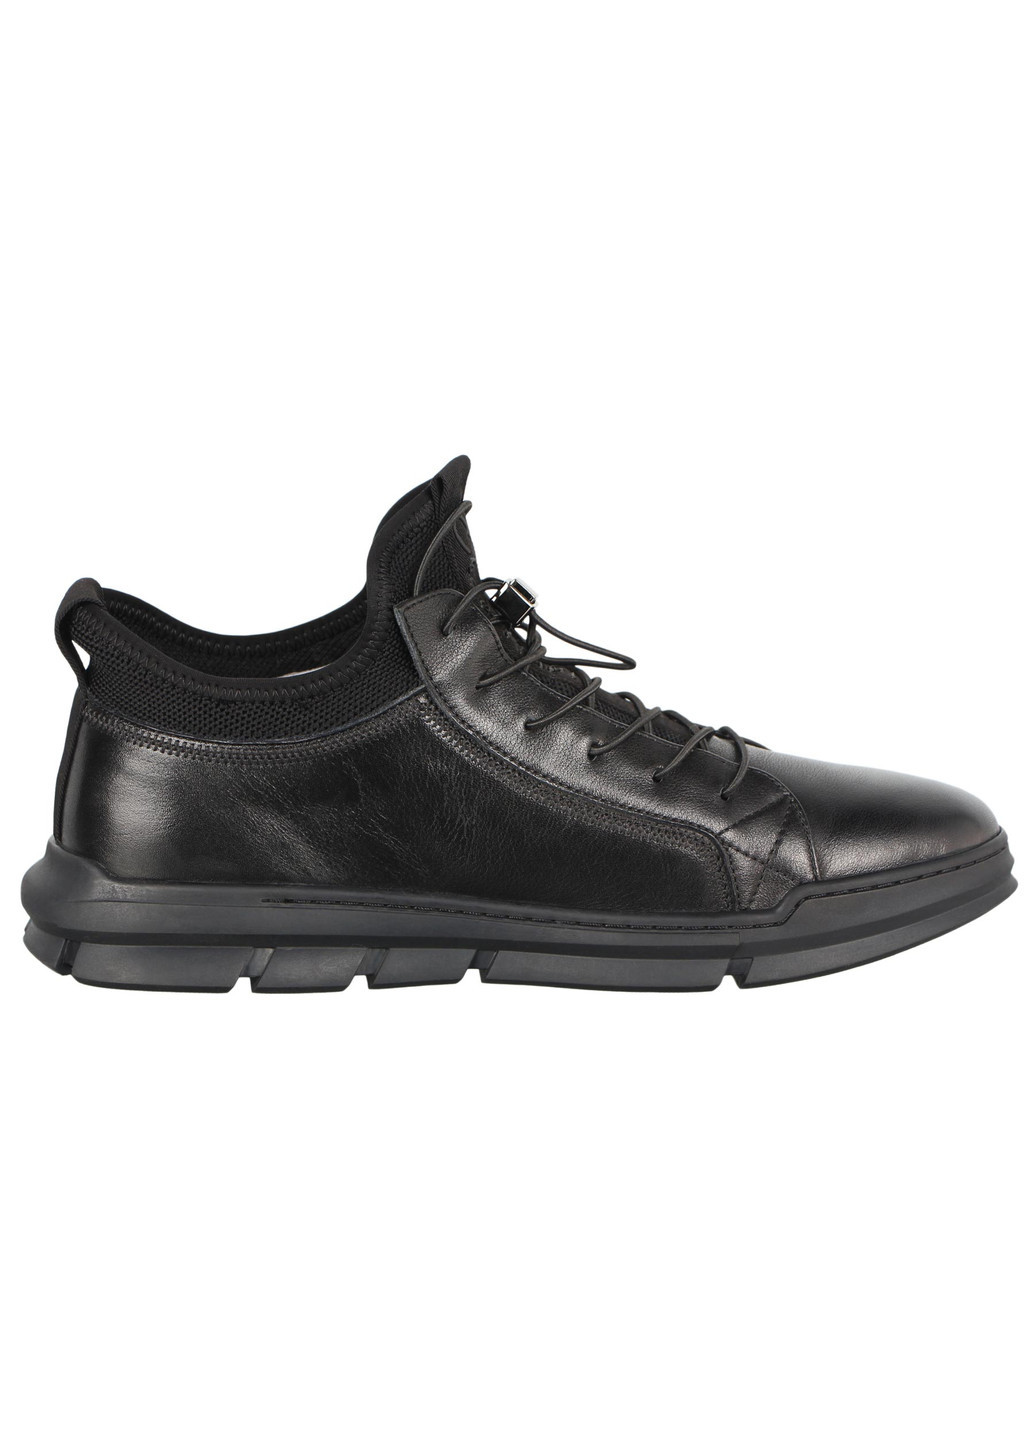 Черные зимние мужские зимние ботинки 197452 Cosottinni